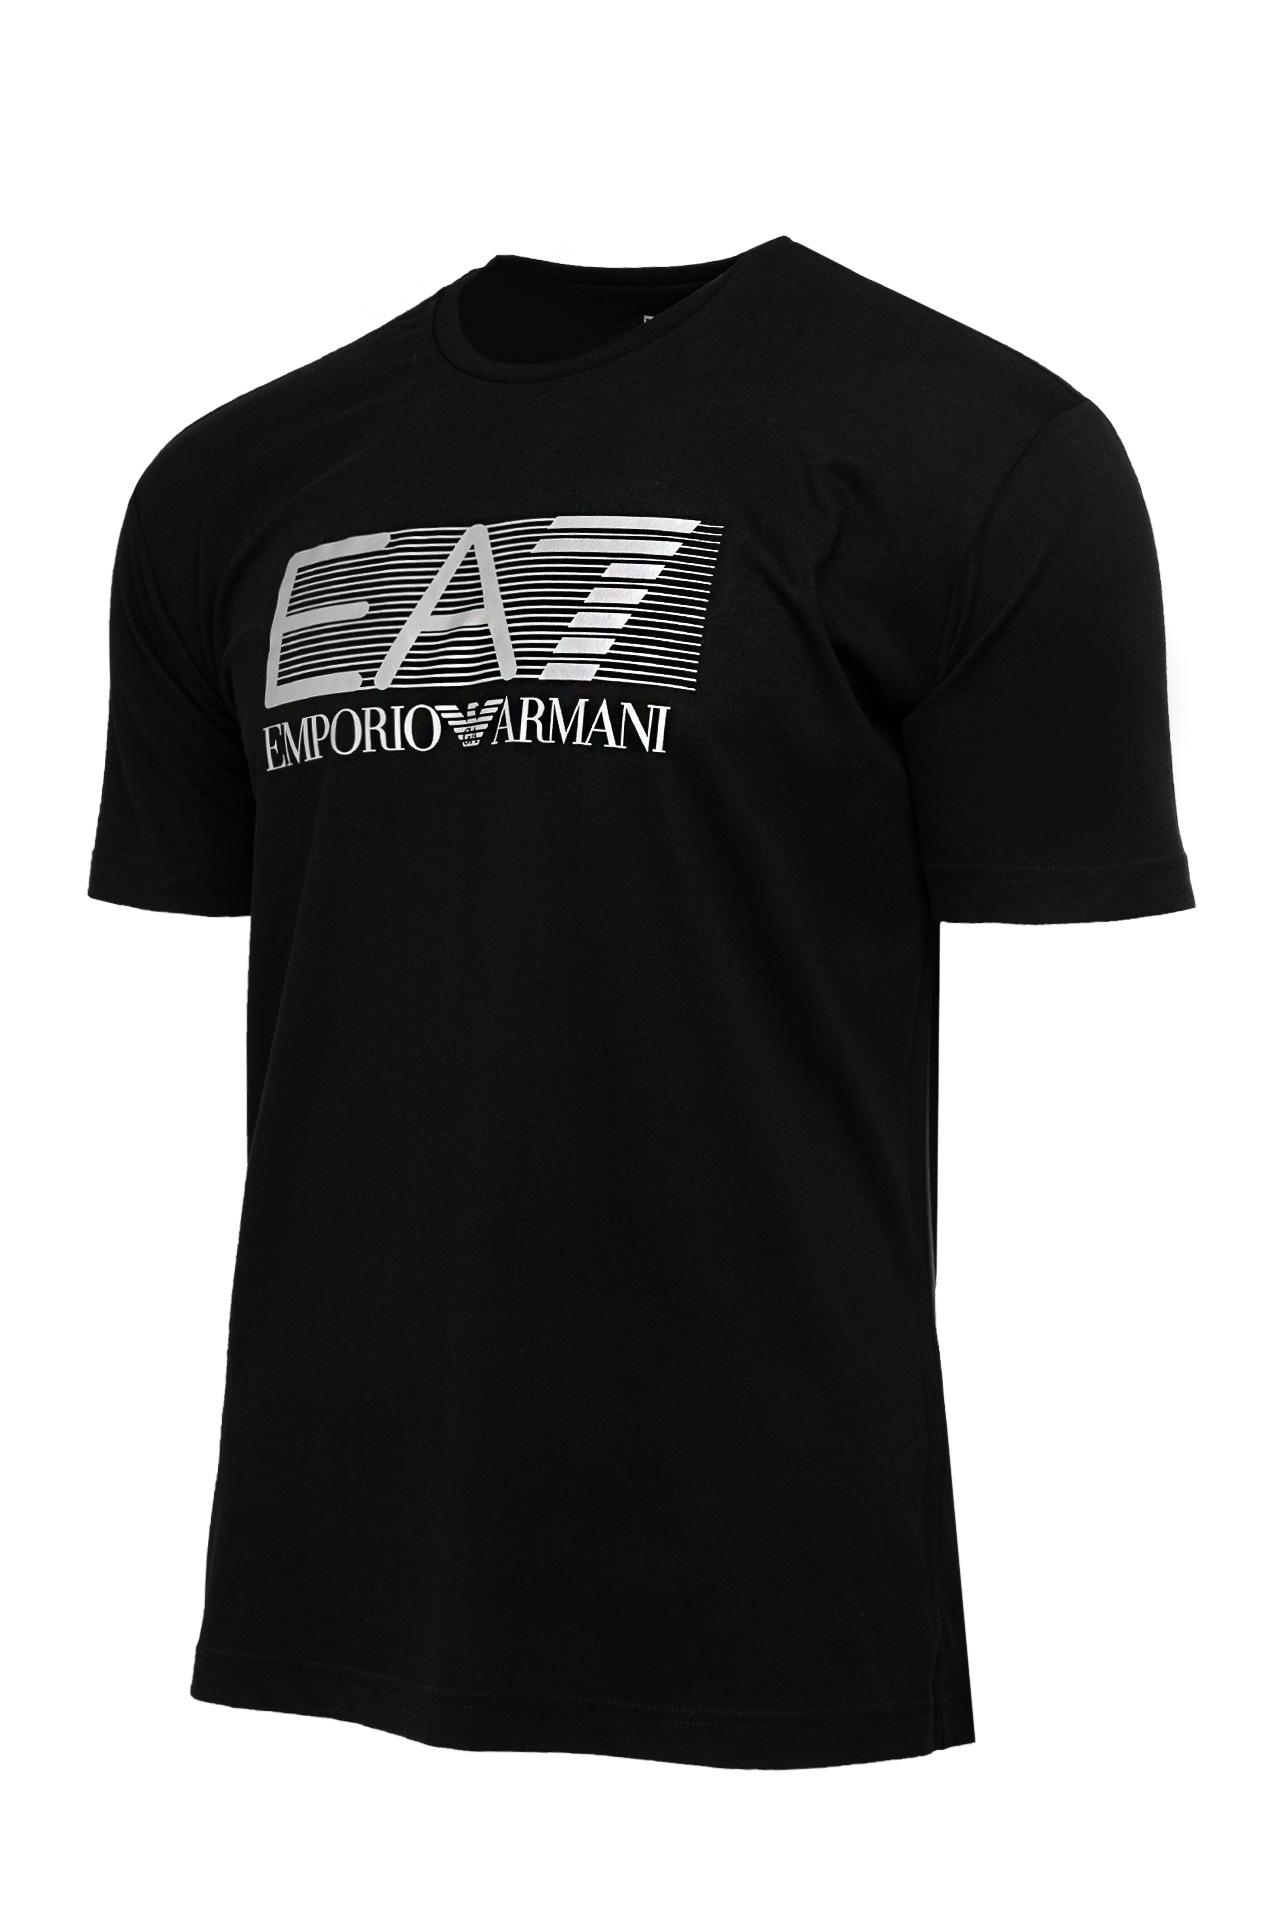 Koszulka męska Emporio Armani 6LPT09-PJ02Z-0200